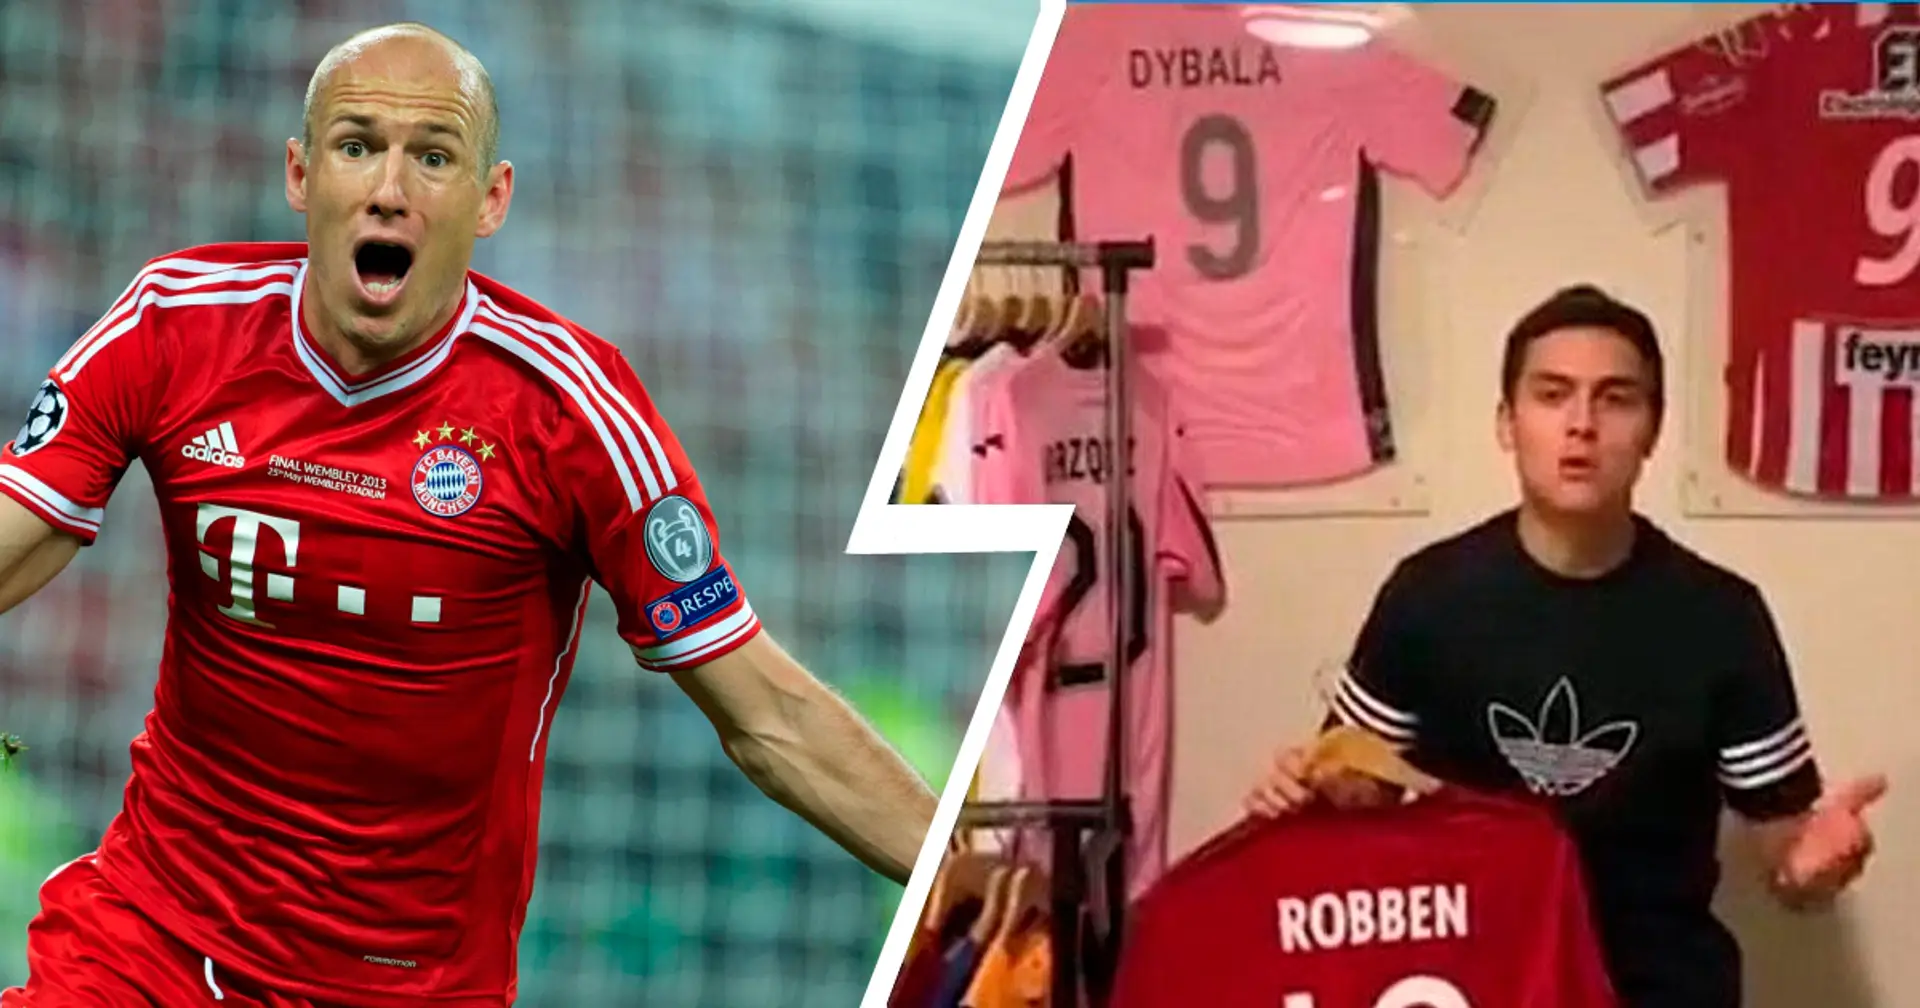 Dybala zeigt das Trikot von Arjen Robben und schwärmt vom Ex-Bayern